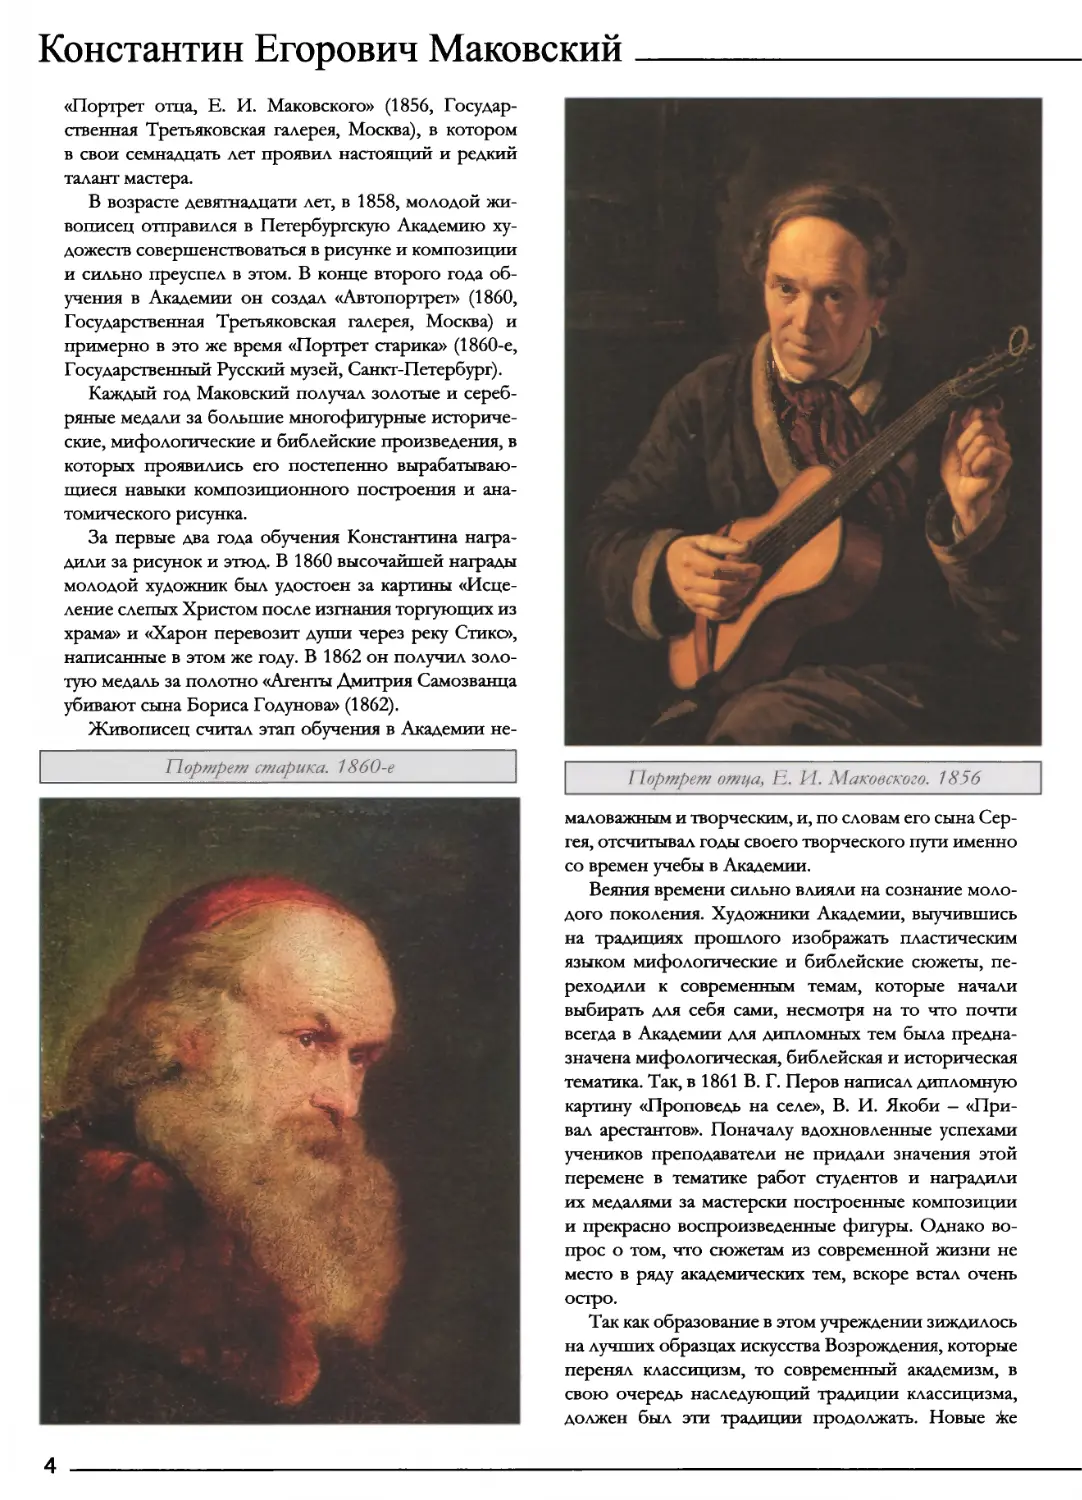 Портрет старика. 1860-е
Портрет отца, Е. И. Маковского. 1856